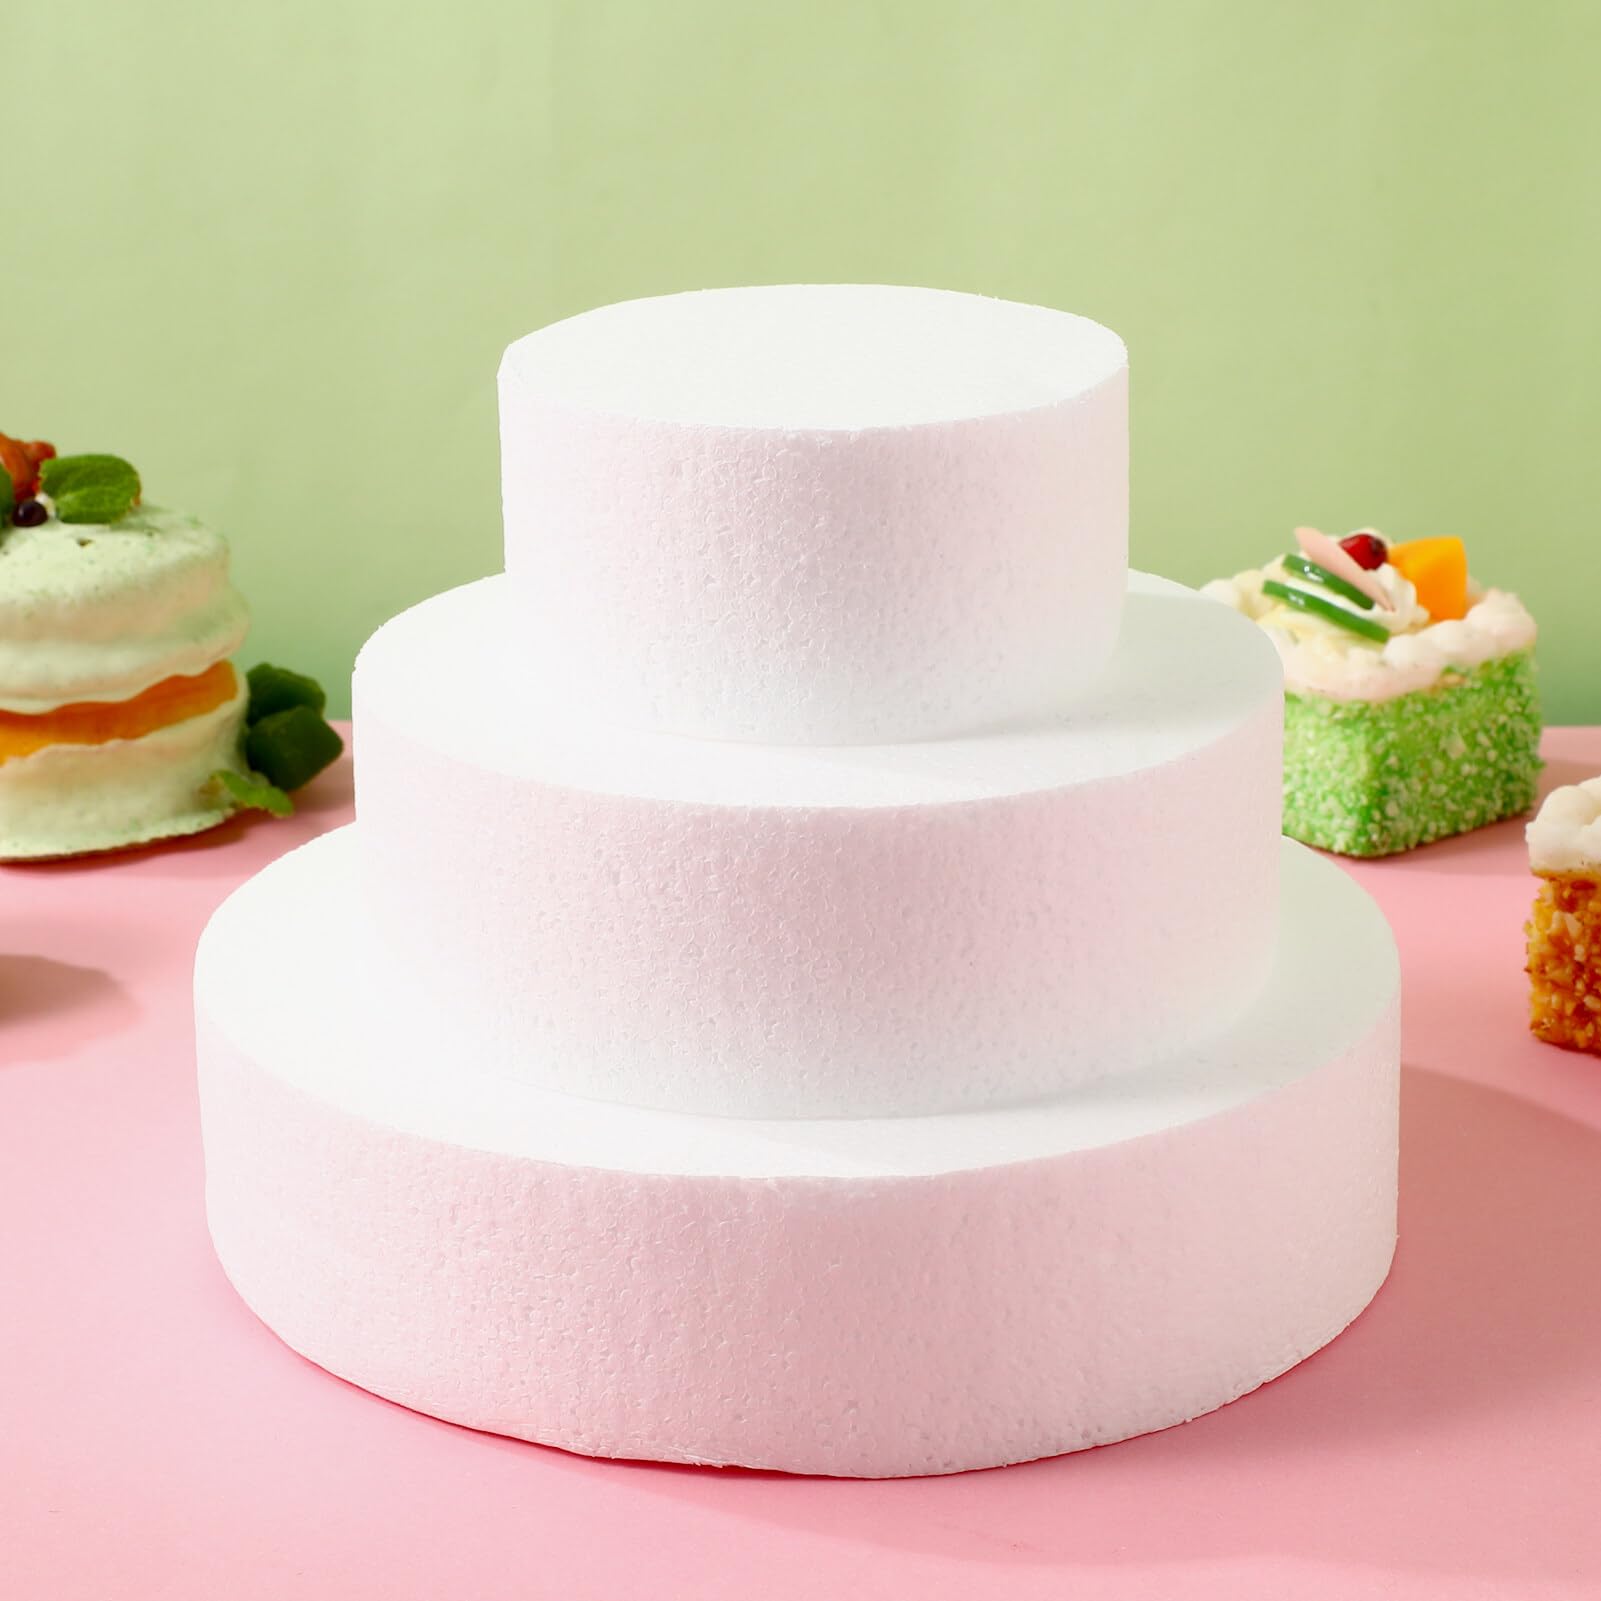 3PCS Round Foam Cake Set Fake Wedding Cake Round Cake Mini Cake for Wedding Display Window Fondant Cake Decorating Practice Mould Cake 3-Tier Cake Wedding Decor